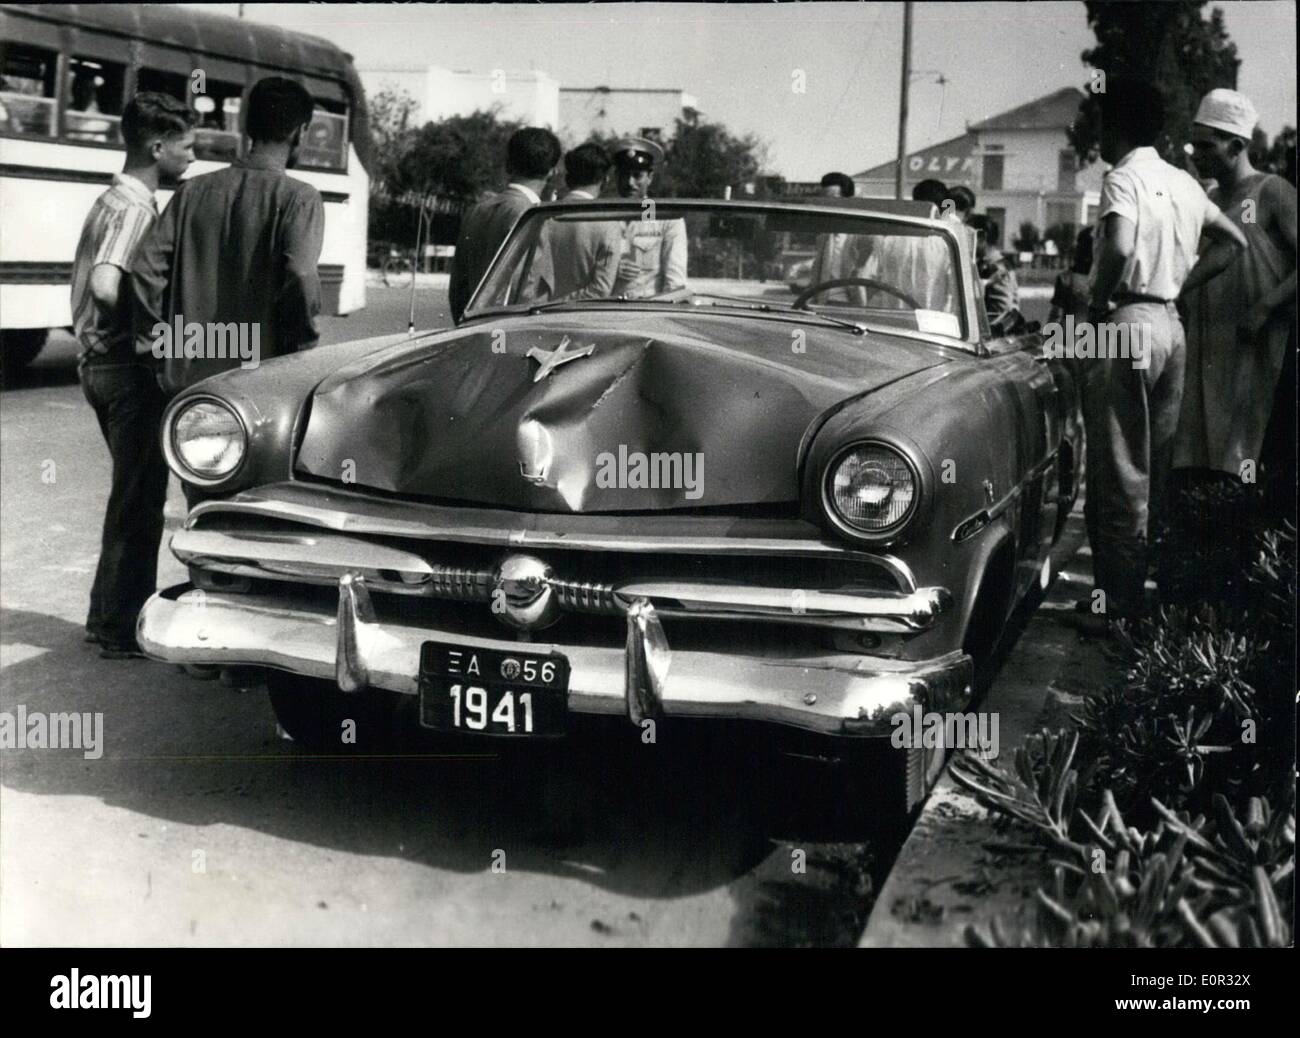 Gen 01, 1958 - La vettura di U.S. Airforce veterani Sgt. Mouzali sul quale si può notare che i danni causati quando la vettura Foto Stock